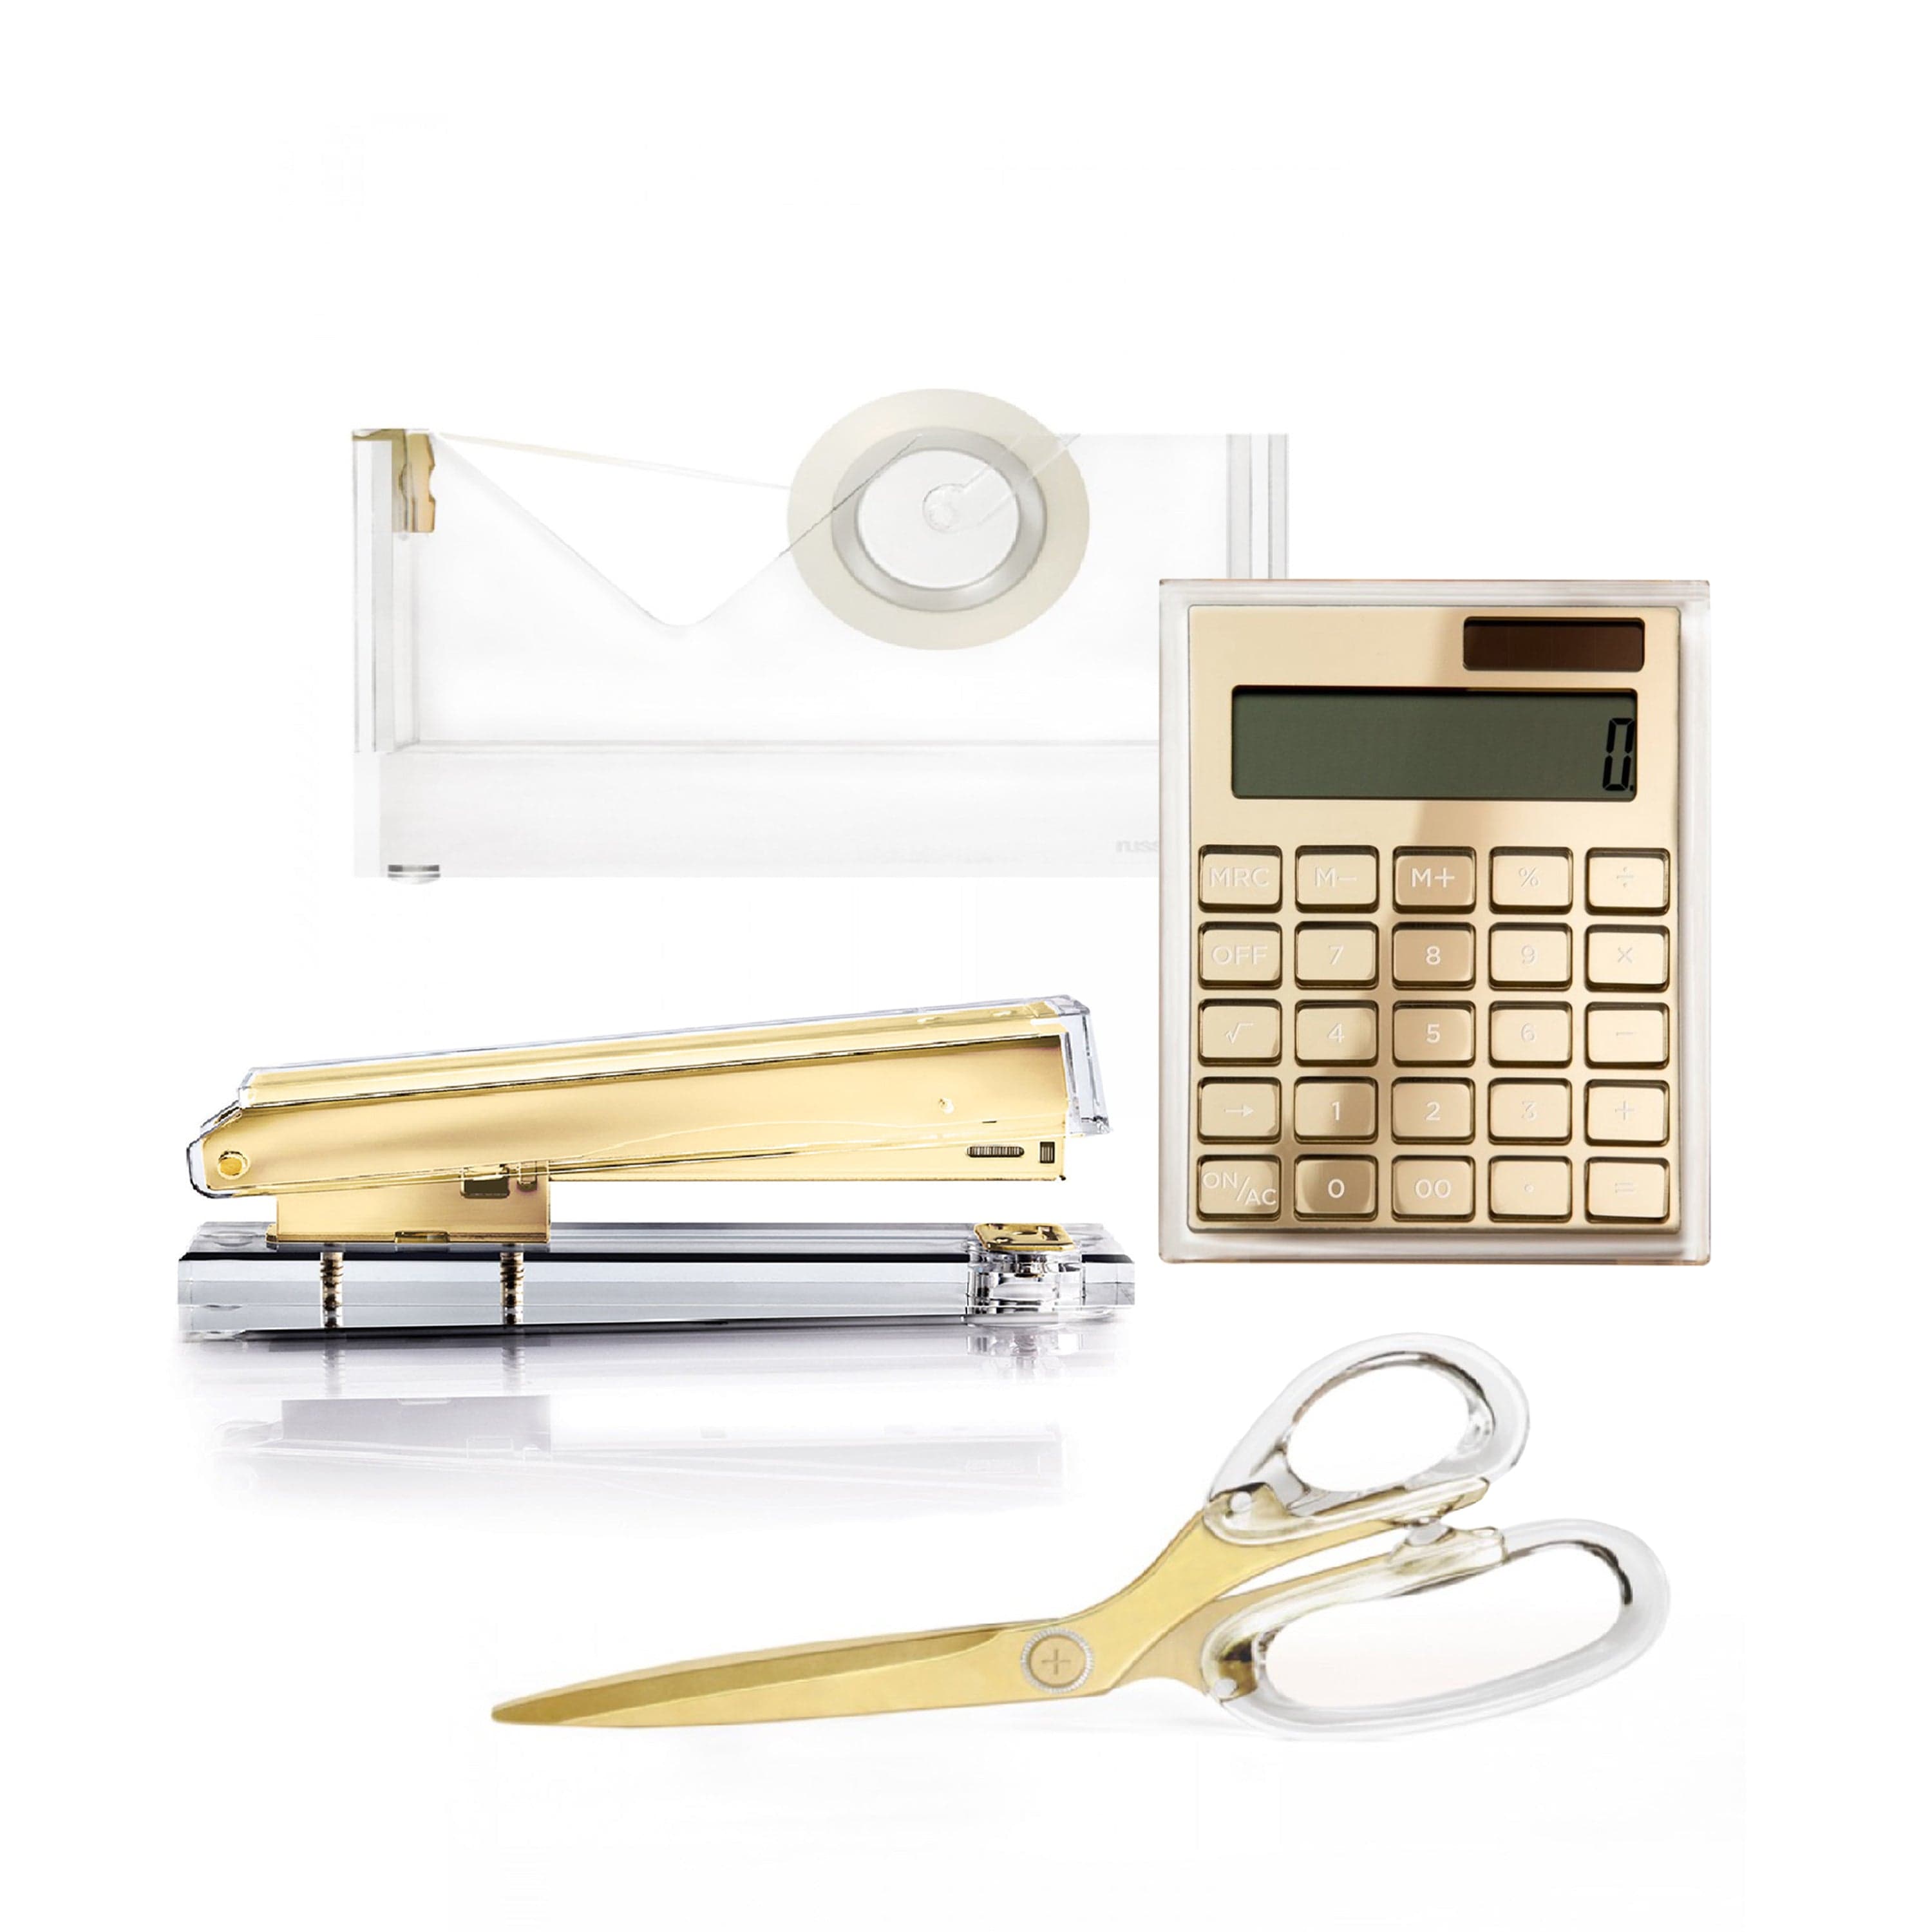 Gold Acrylic Desktop Accessory Bundle including Calculator, Tape